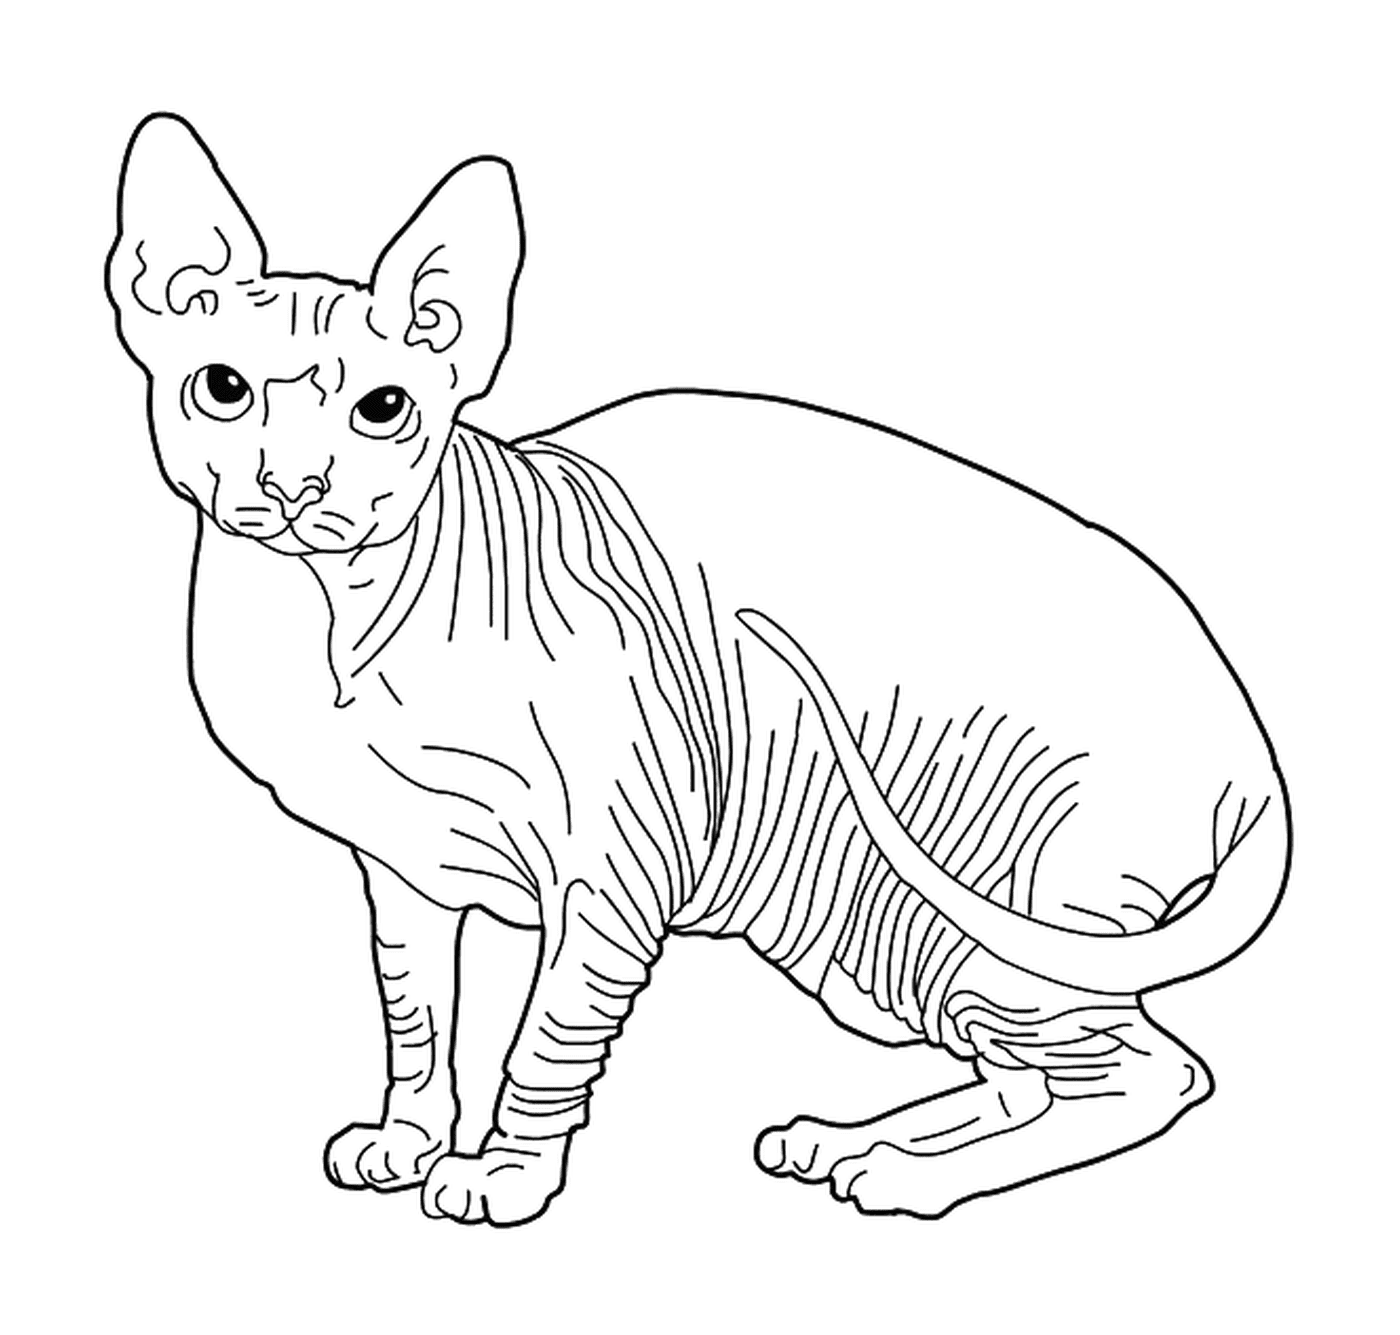   Un Sphynx, un chat sans poils 